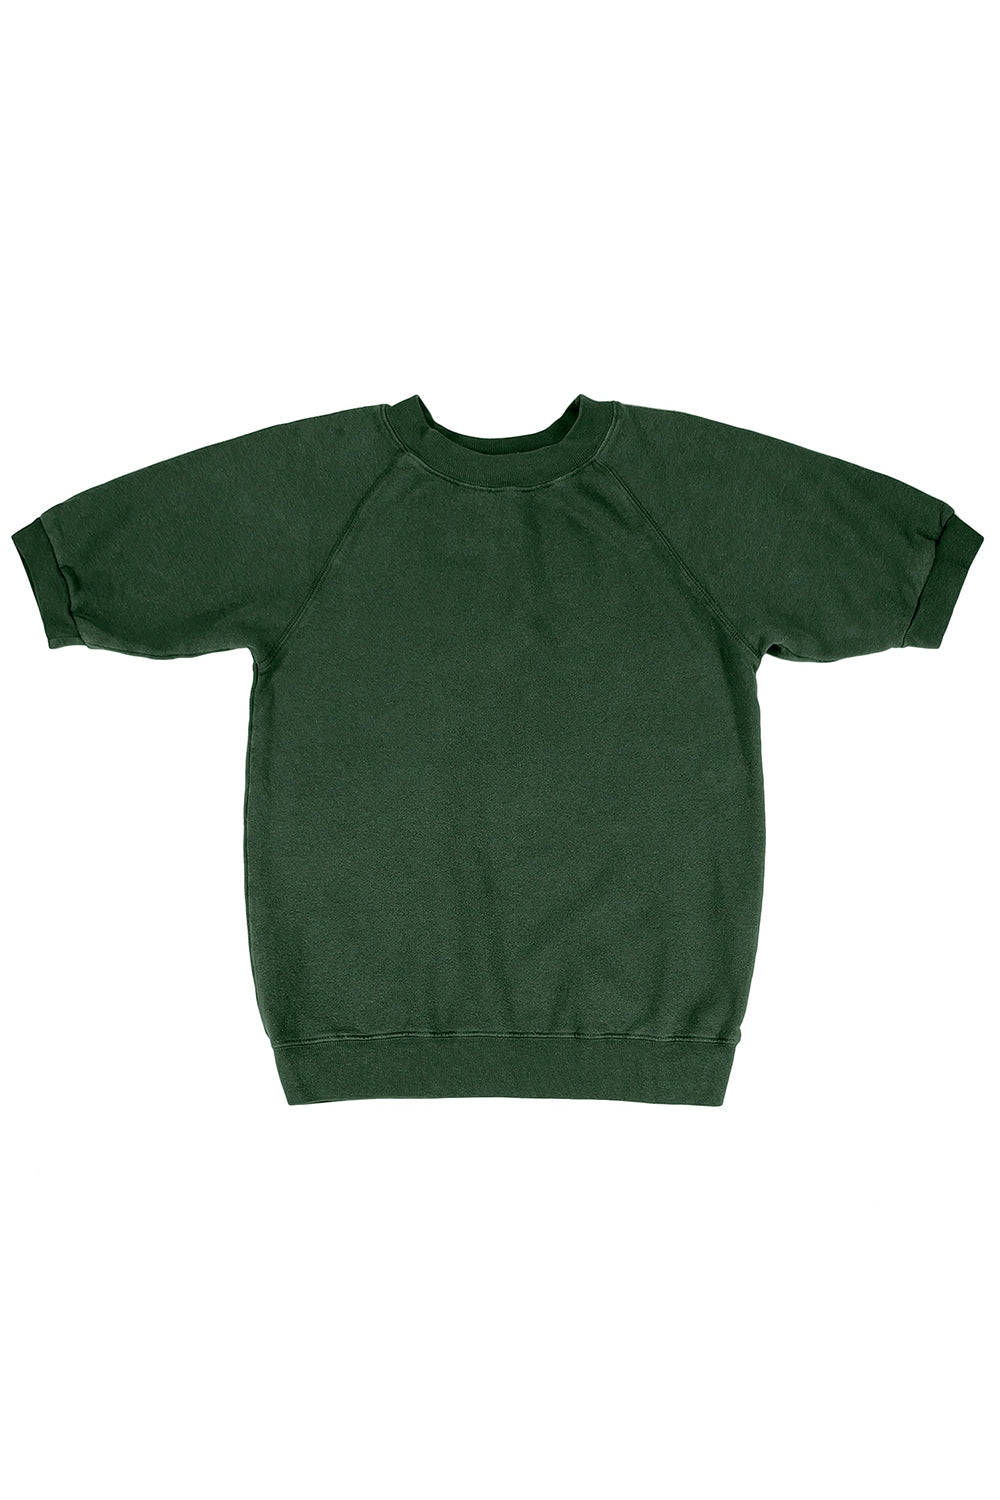 Short Sleeve Raglan Fleece Sweatshirt | Jungmaven Hemp Clothing & Accessories / Color: Hunter Green